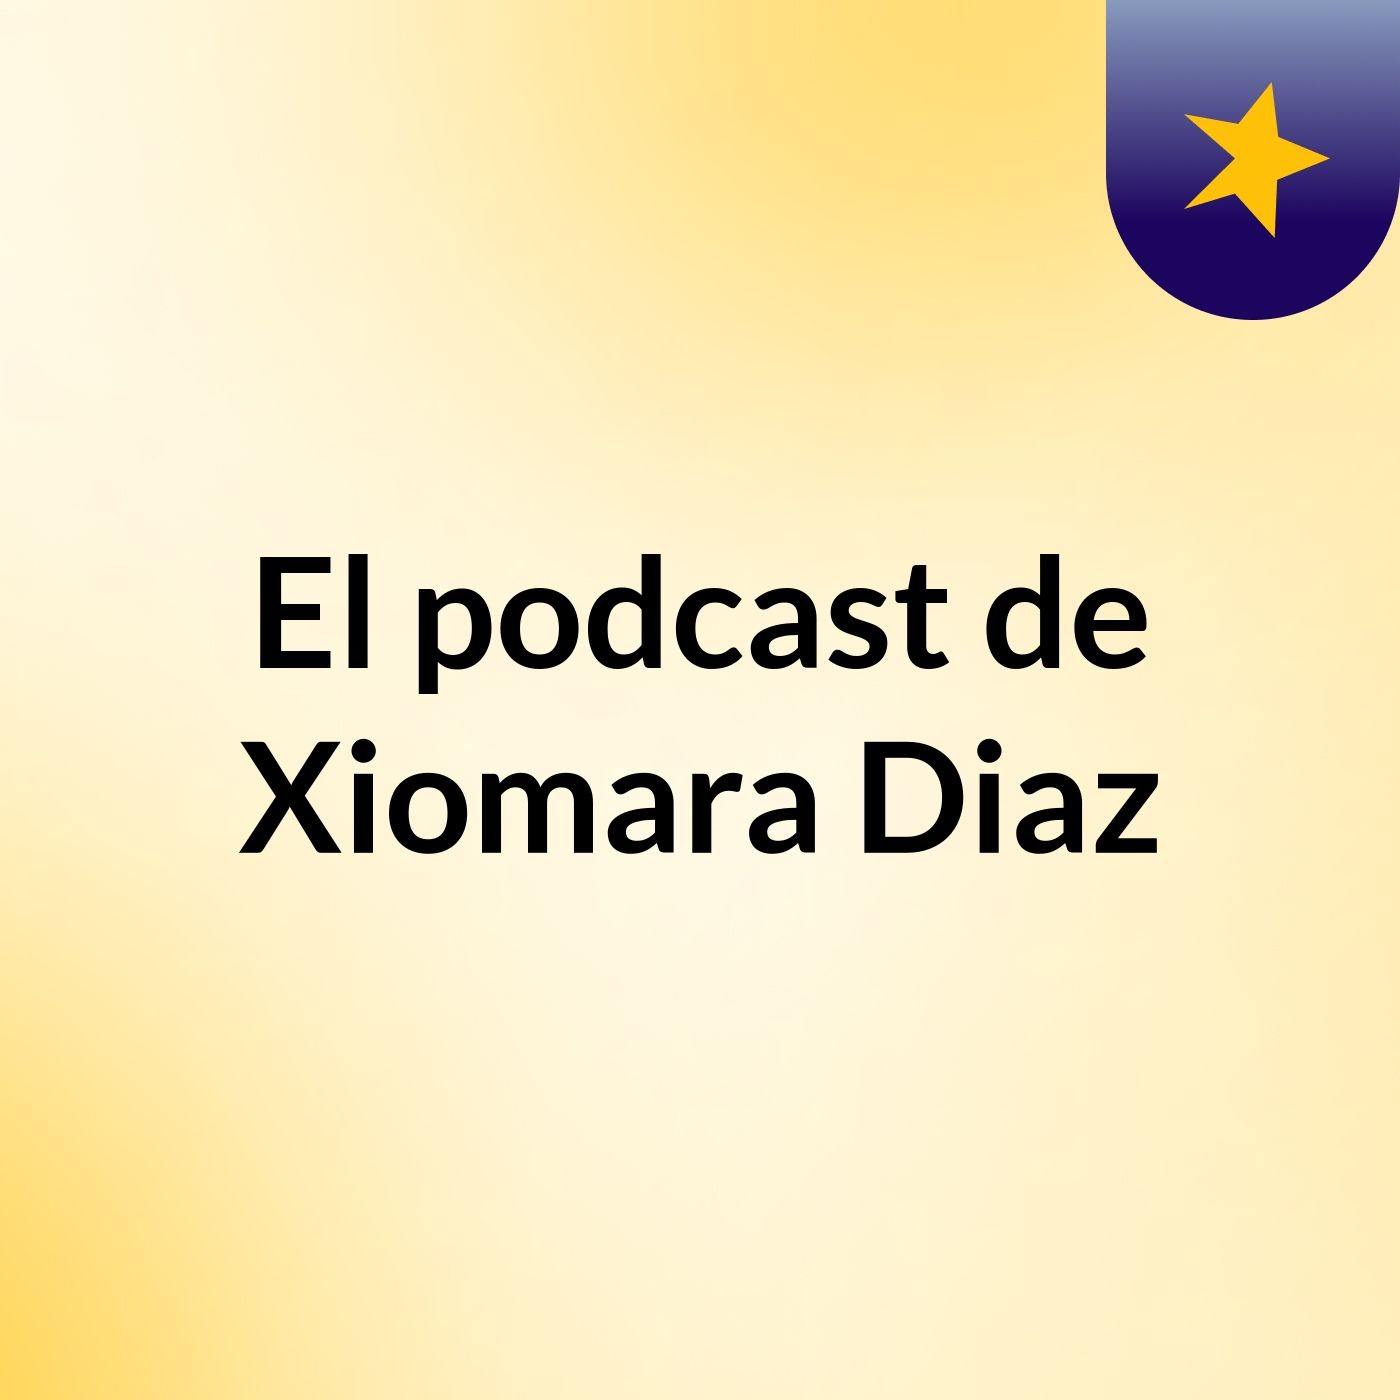 El podcast de Xiomara Diaz